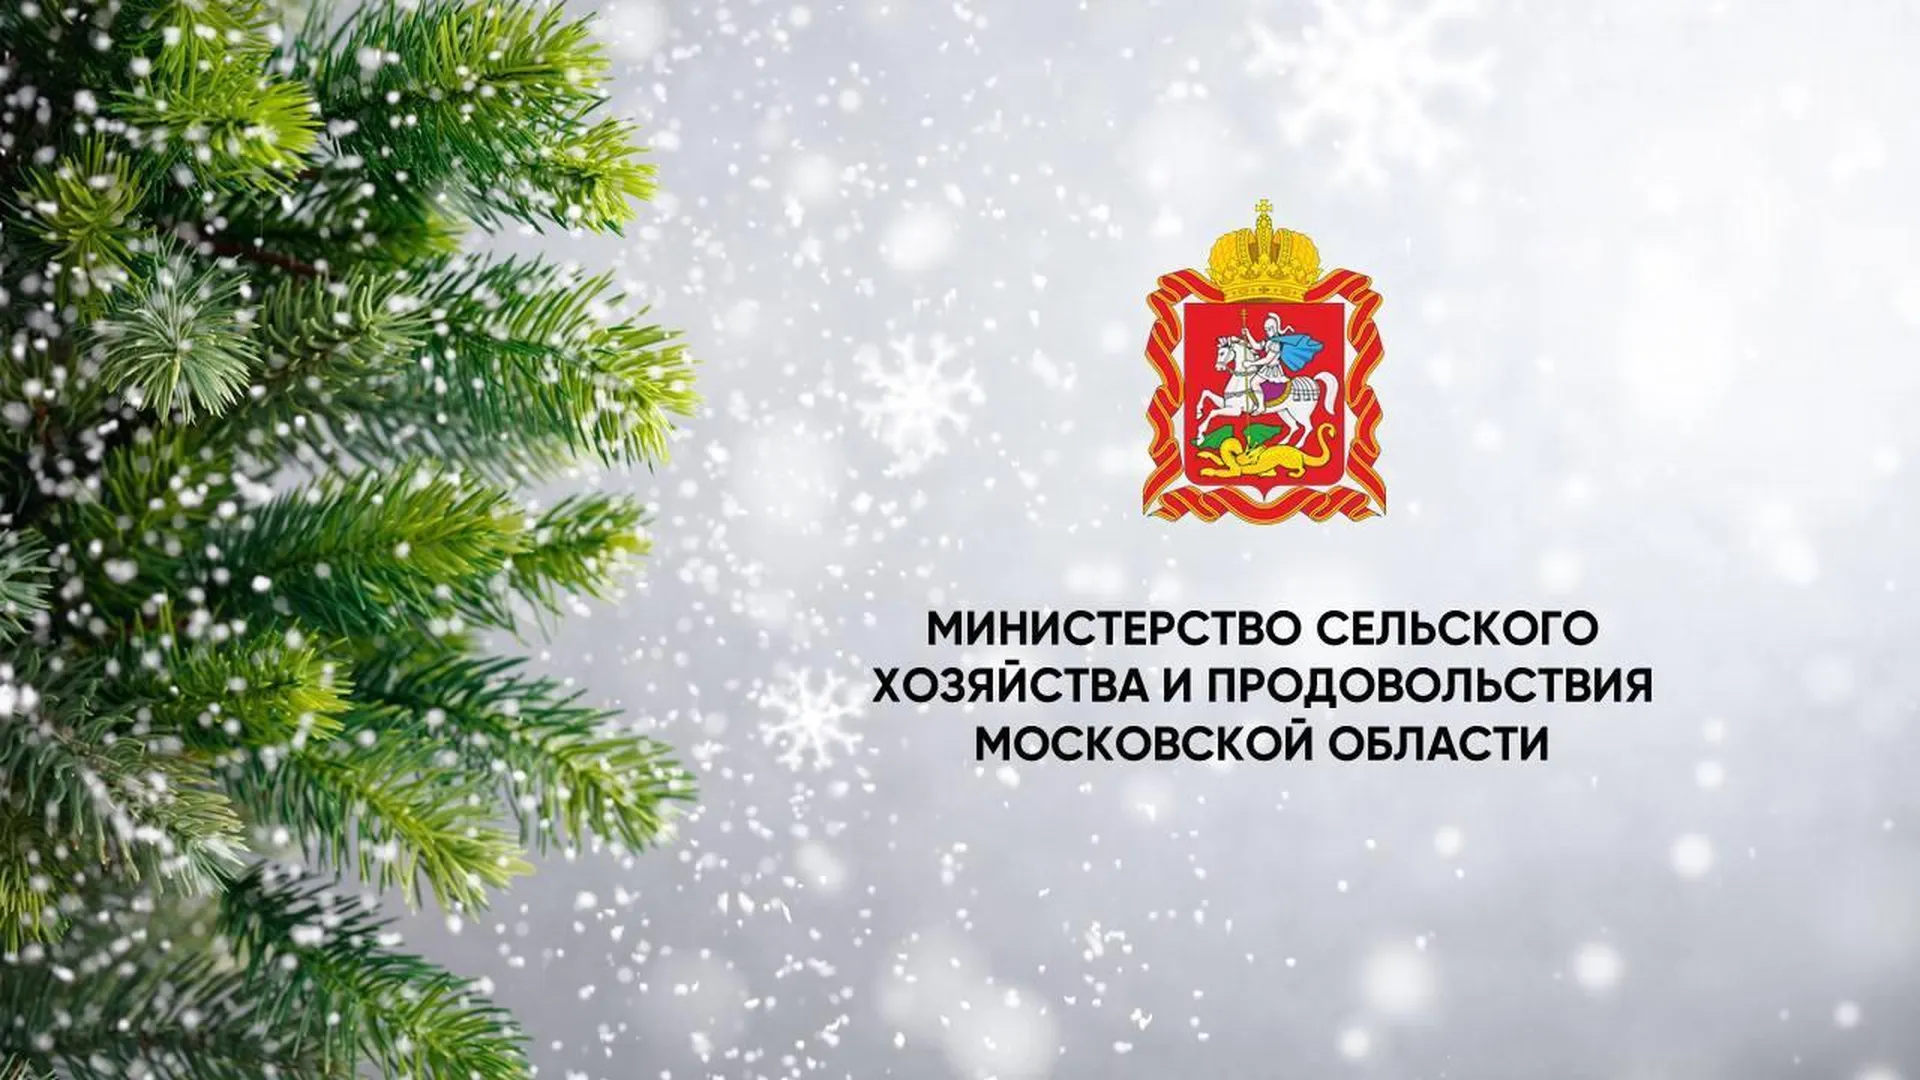 Зампред правительства Владислав Мурашов поздравил жителей Подмосковья с наступающим Новым годом